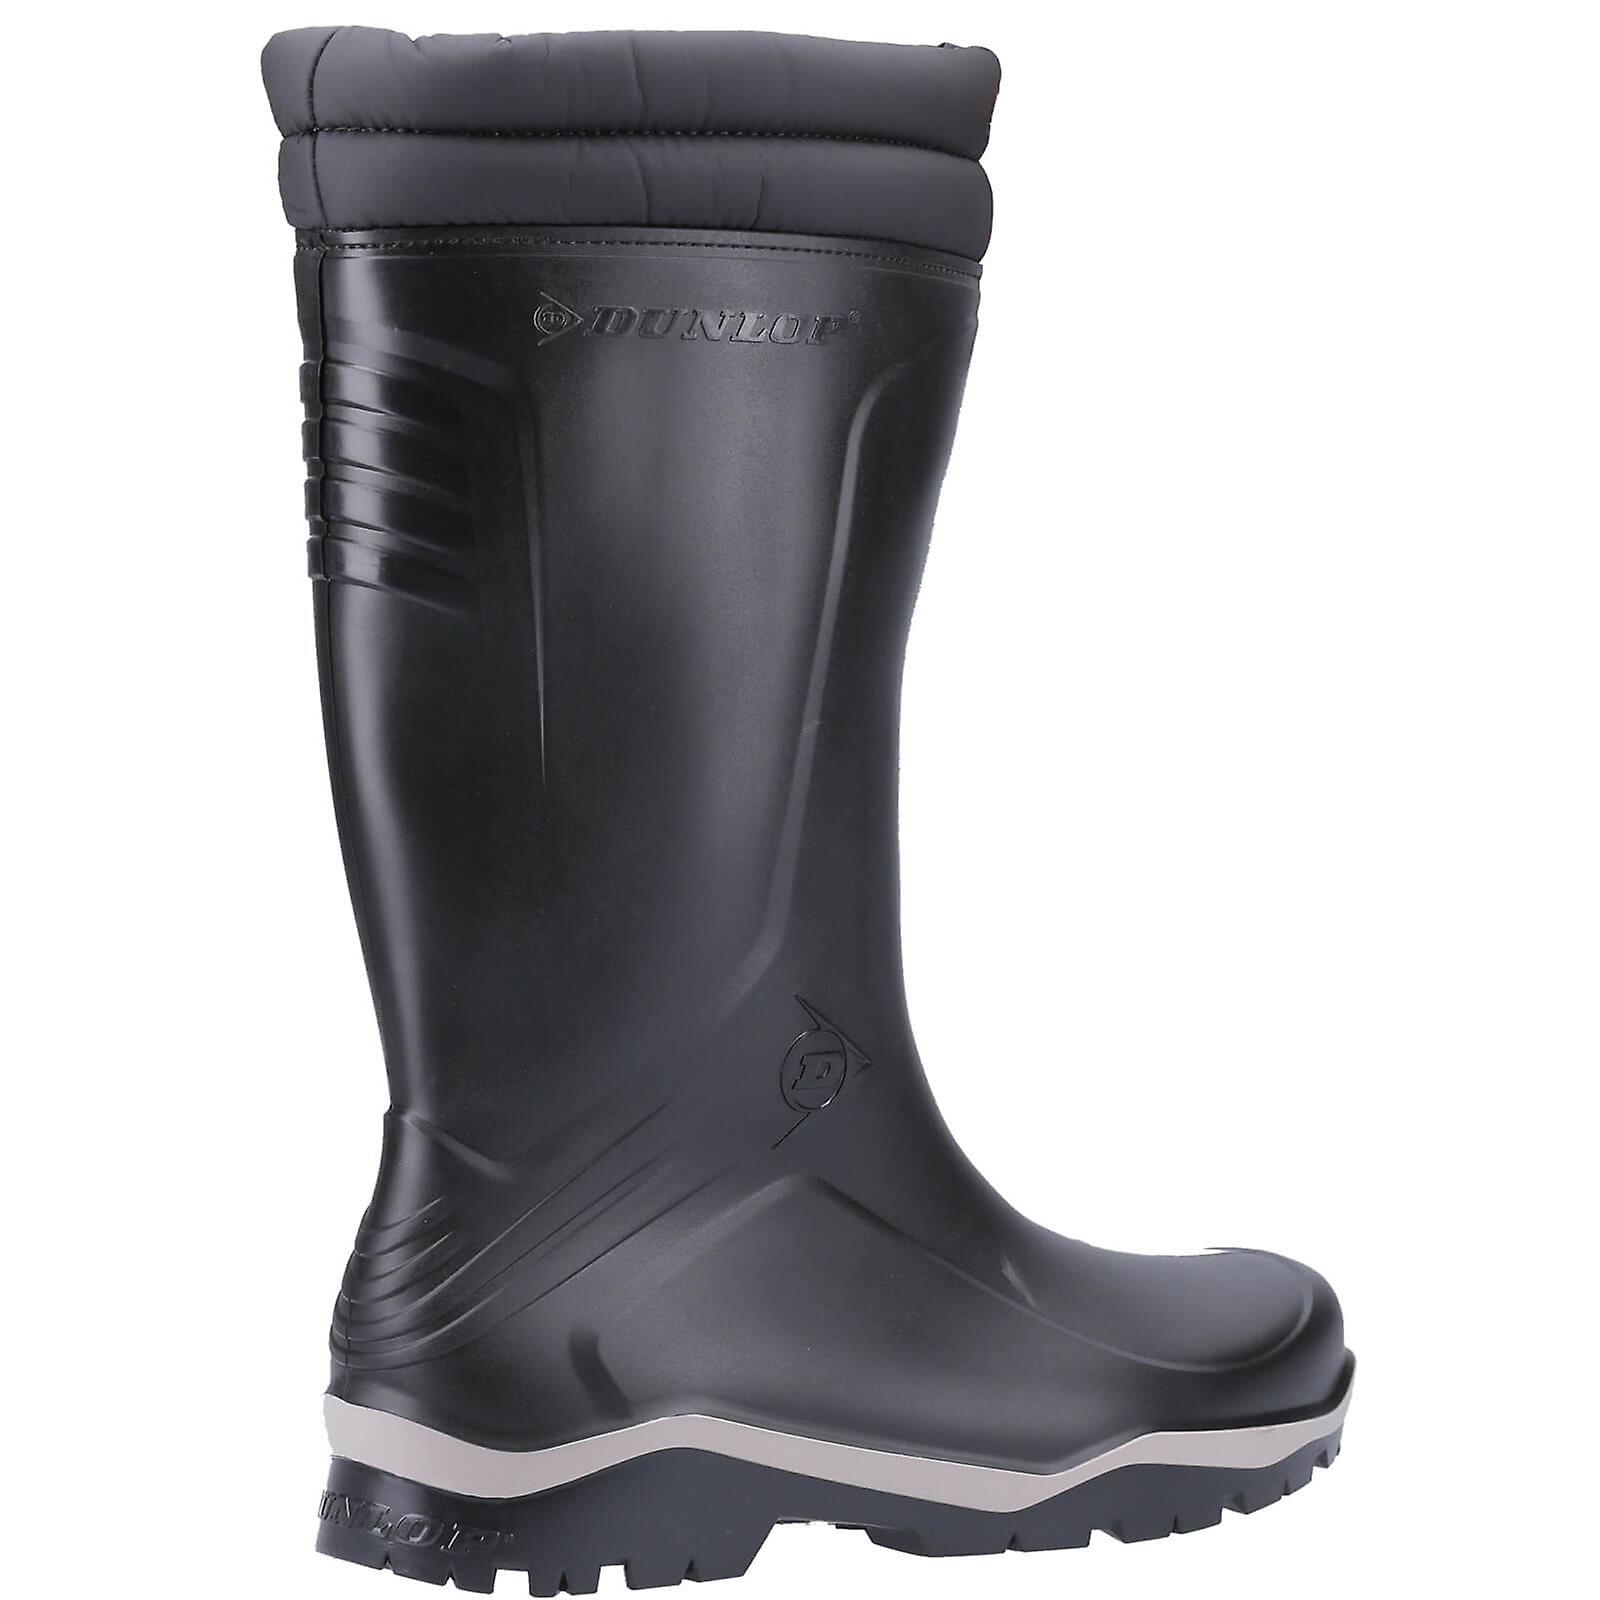 Dunlop blizzard plain rubber wellington boots